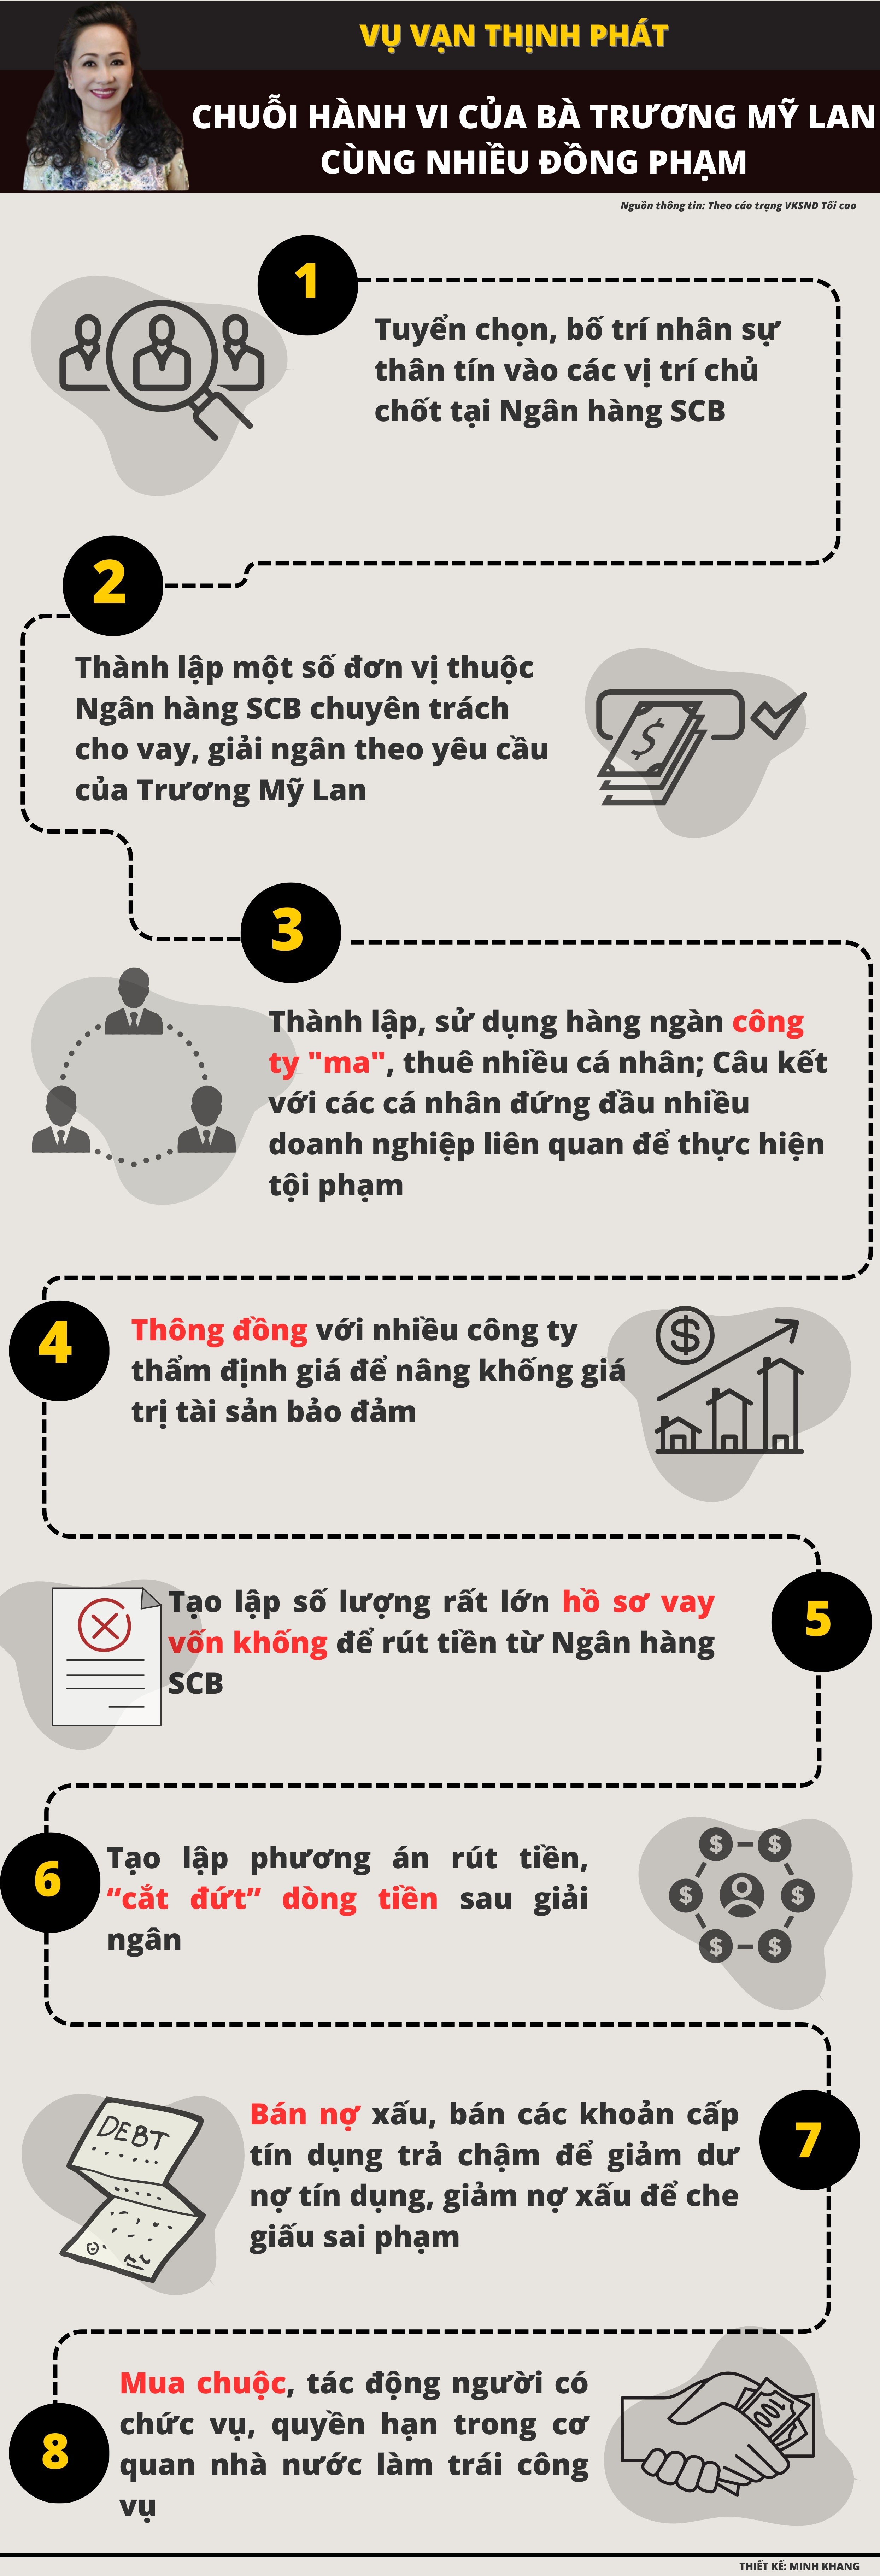 Infographic: Chuỗi hành vi của bà Trương Mỹ Lan và đồng phạm thực hiện để chiếm đoạt số tiền đặc biệt lớn - 1